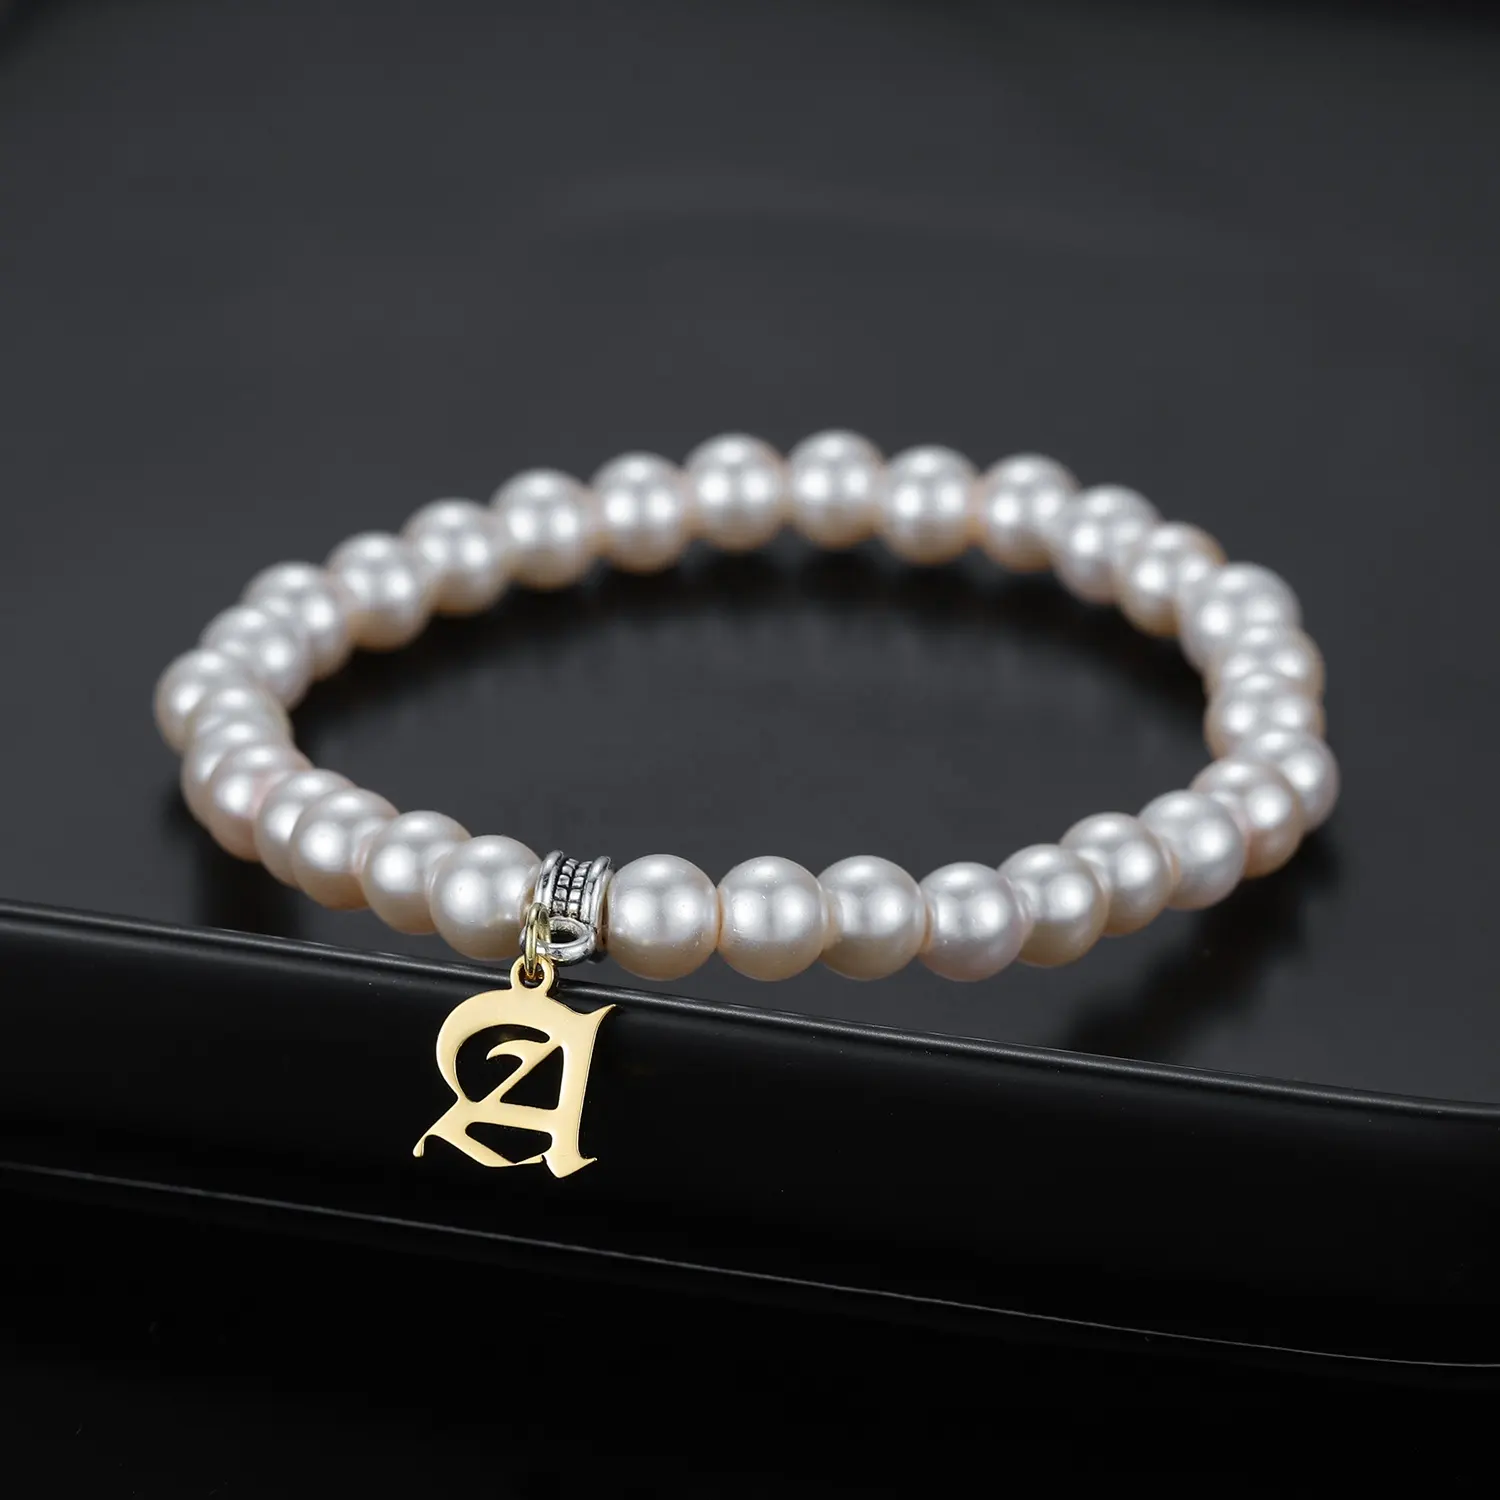 Neuer Trend personalisierte altenglische Buchstaben-Armbänder individuelle Initialen Perlenarmband für Damenzubehör